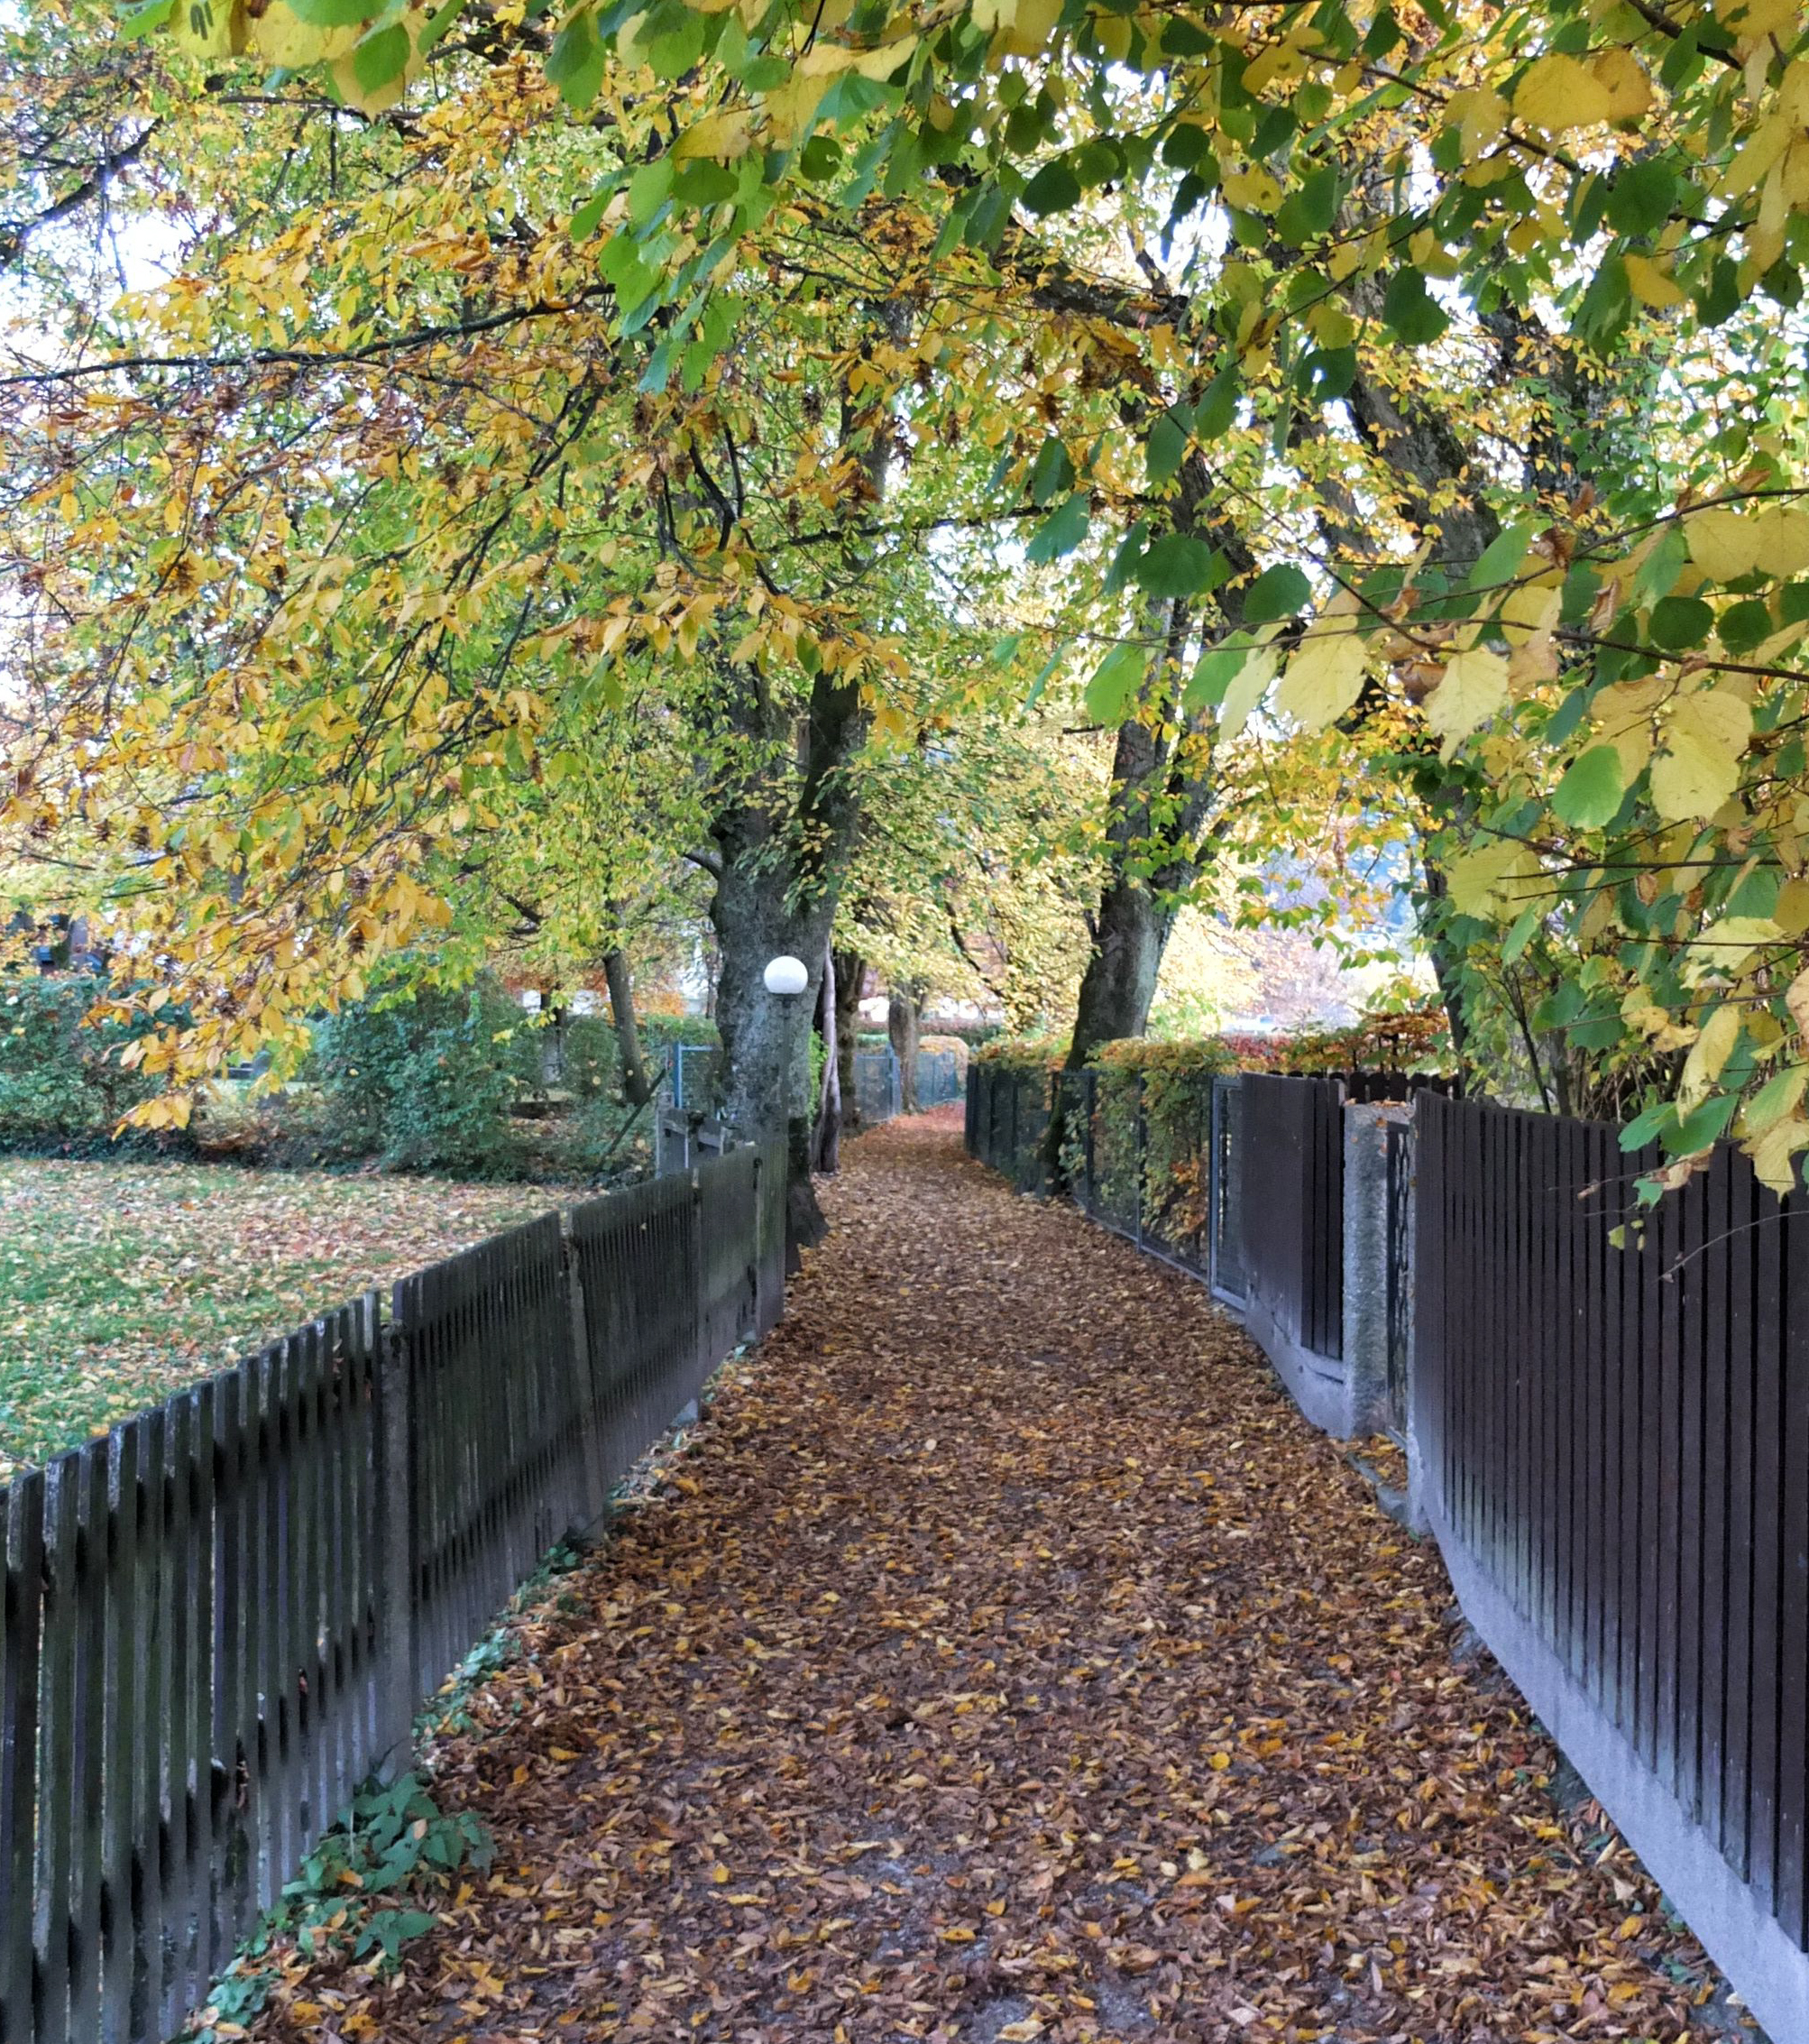 Leaf-strewn pathway